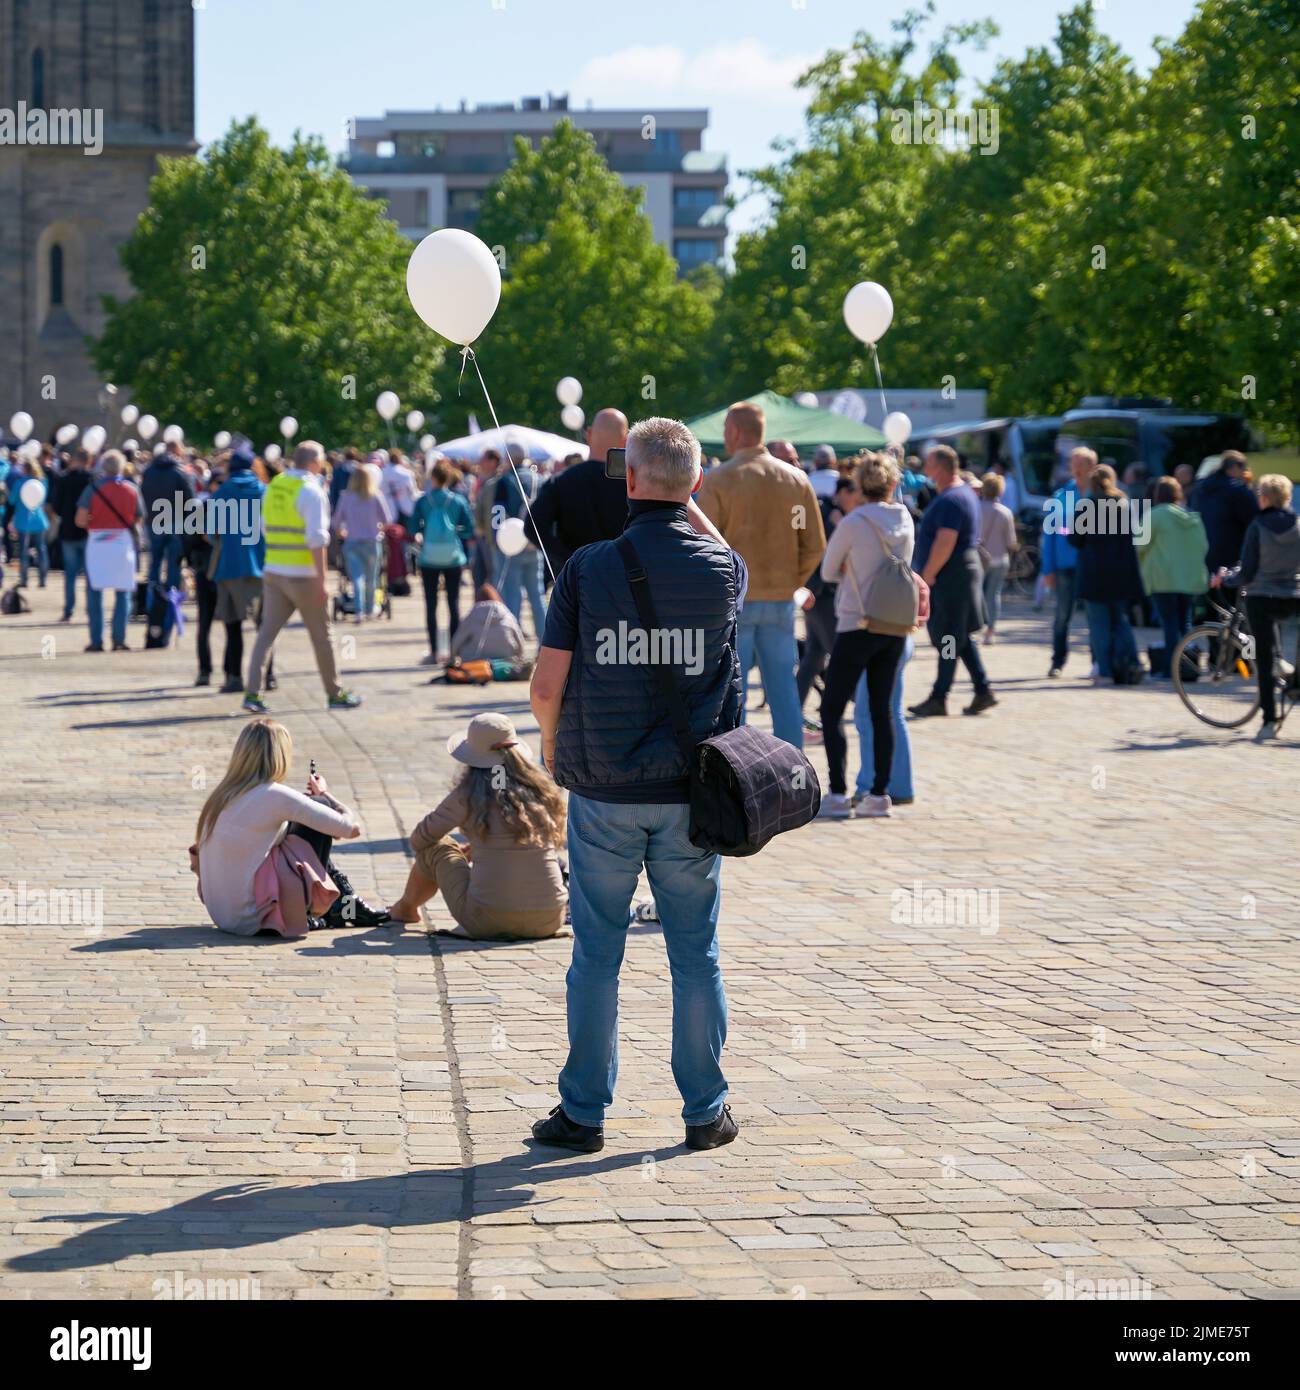 Manifestation lors de la pandémie de Corona sur la place de la cathédrale de Magdebourg en Allemagne Banque D'Images